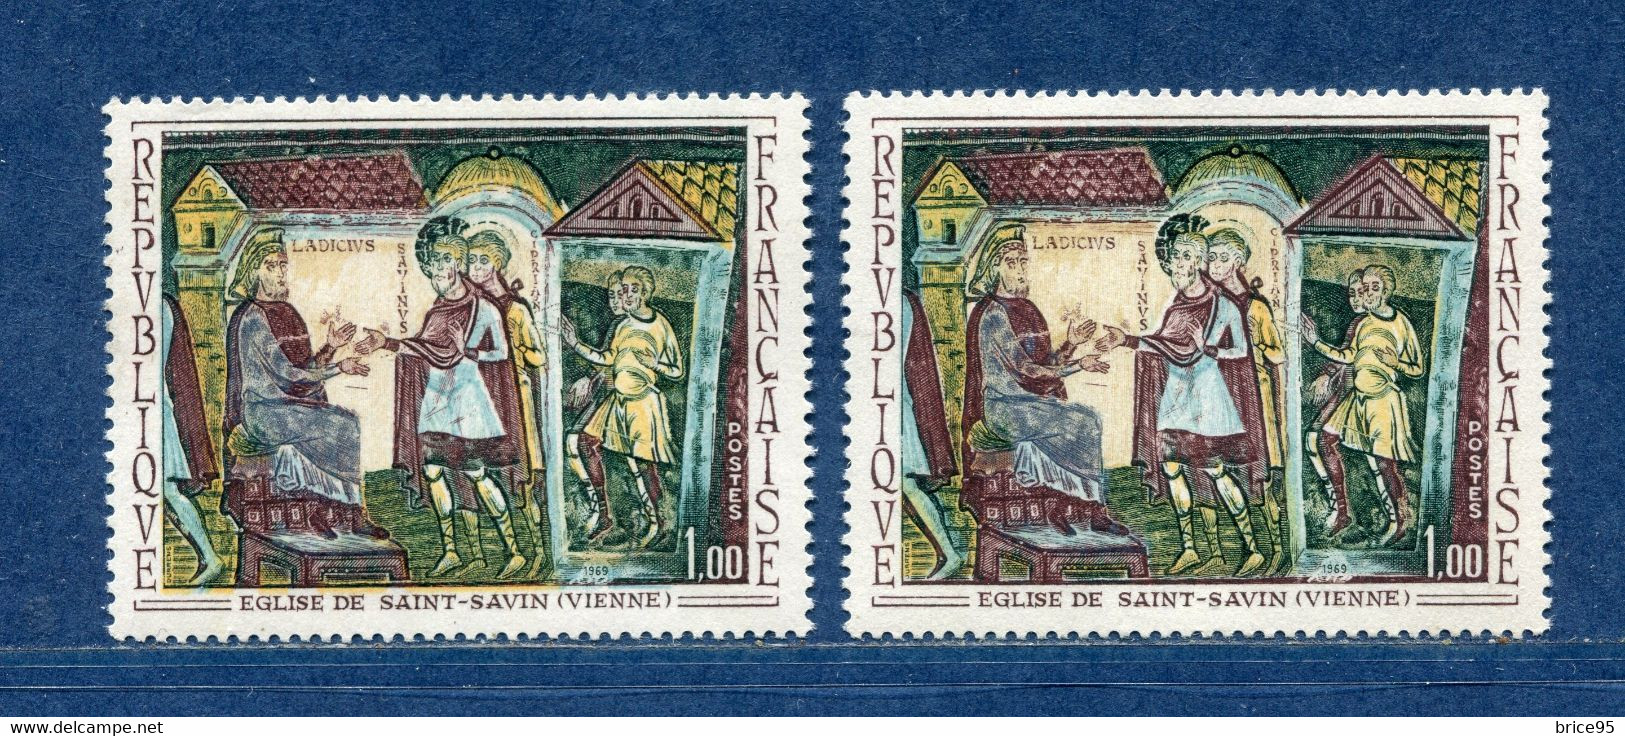 ⭐ France - Variété - YT N° 1588 - Couleurs - Pétouilles - Neuf Sans Charnière - 1969 ⭐ - Unused Stamps